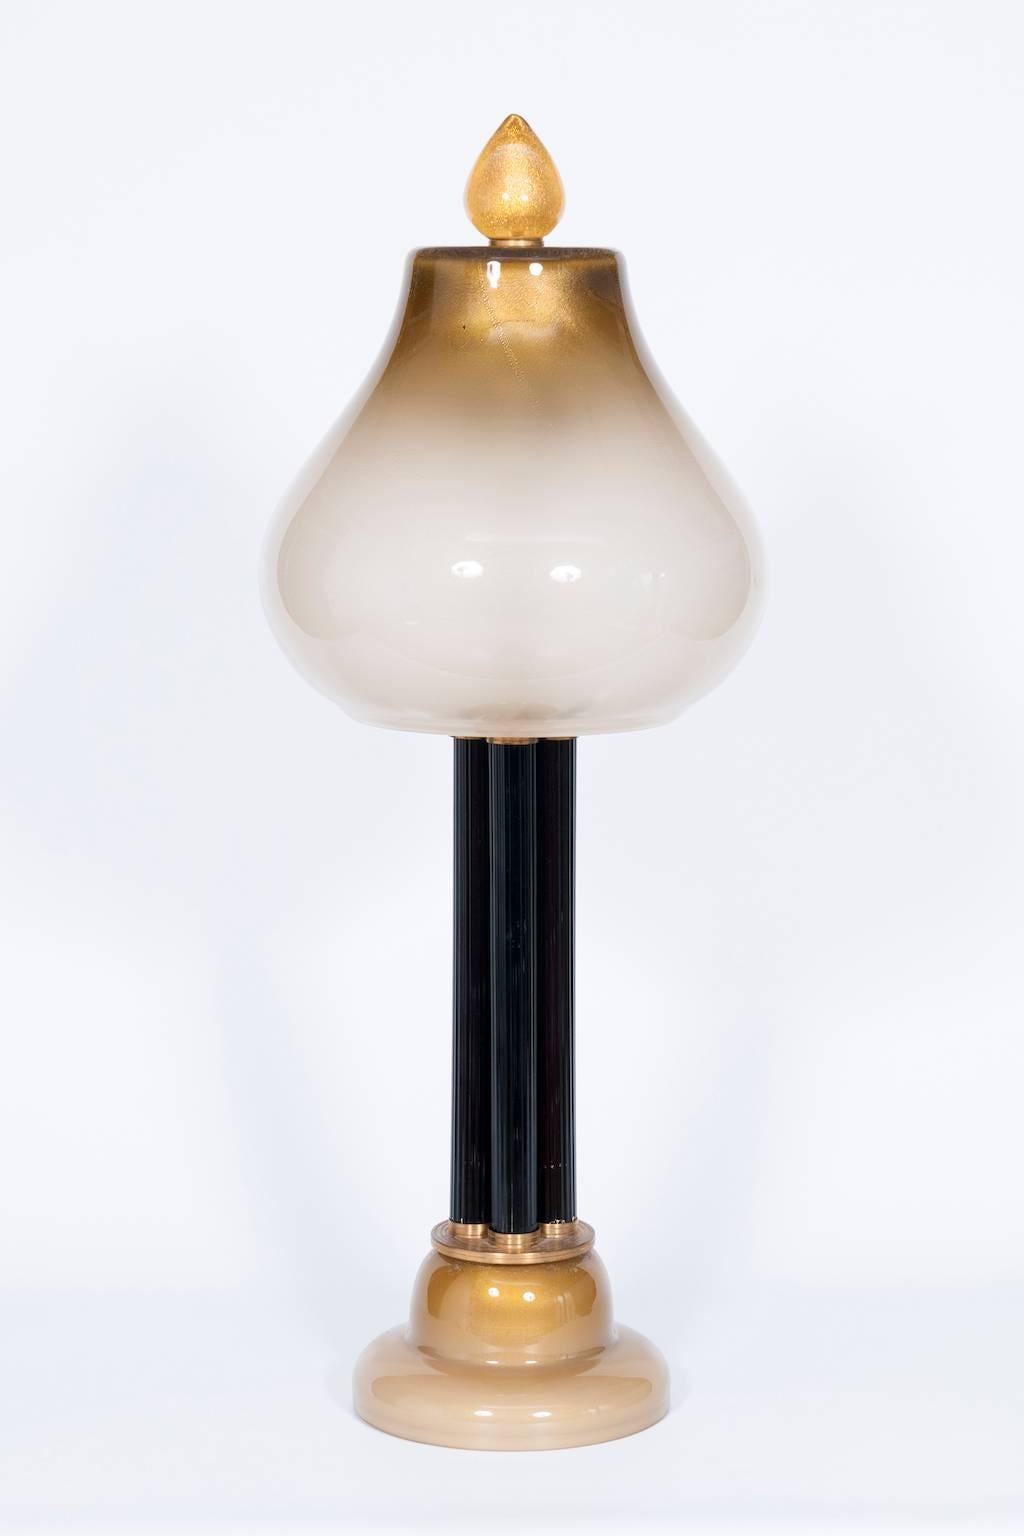 Elegante italienisch-venezianische Tischlampe aus geblasenem Muranoglas, weiß und gold, 21. 
Dies ist eine erstaunliche und einzigartige Tischlampe, komplett handgefertigt aus geblasenem Muranoglas. Die Tischleuchte besteht aus wenigen Säulen, die